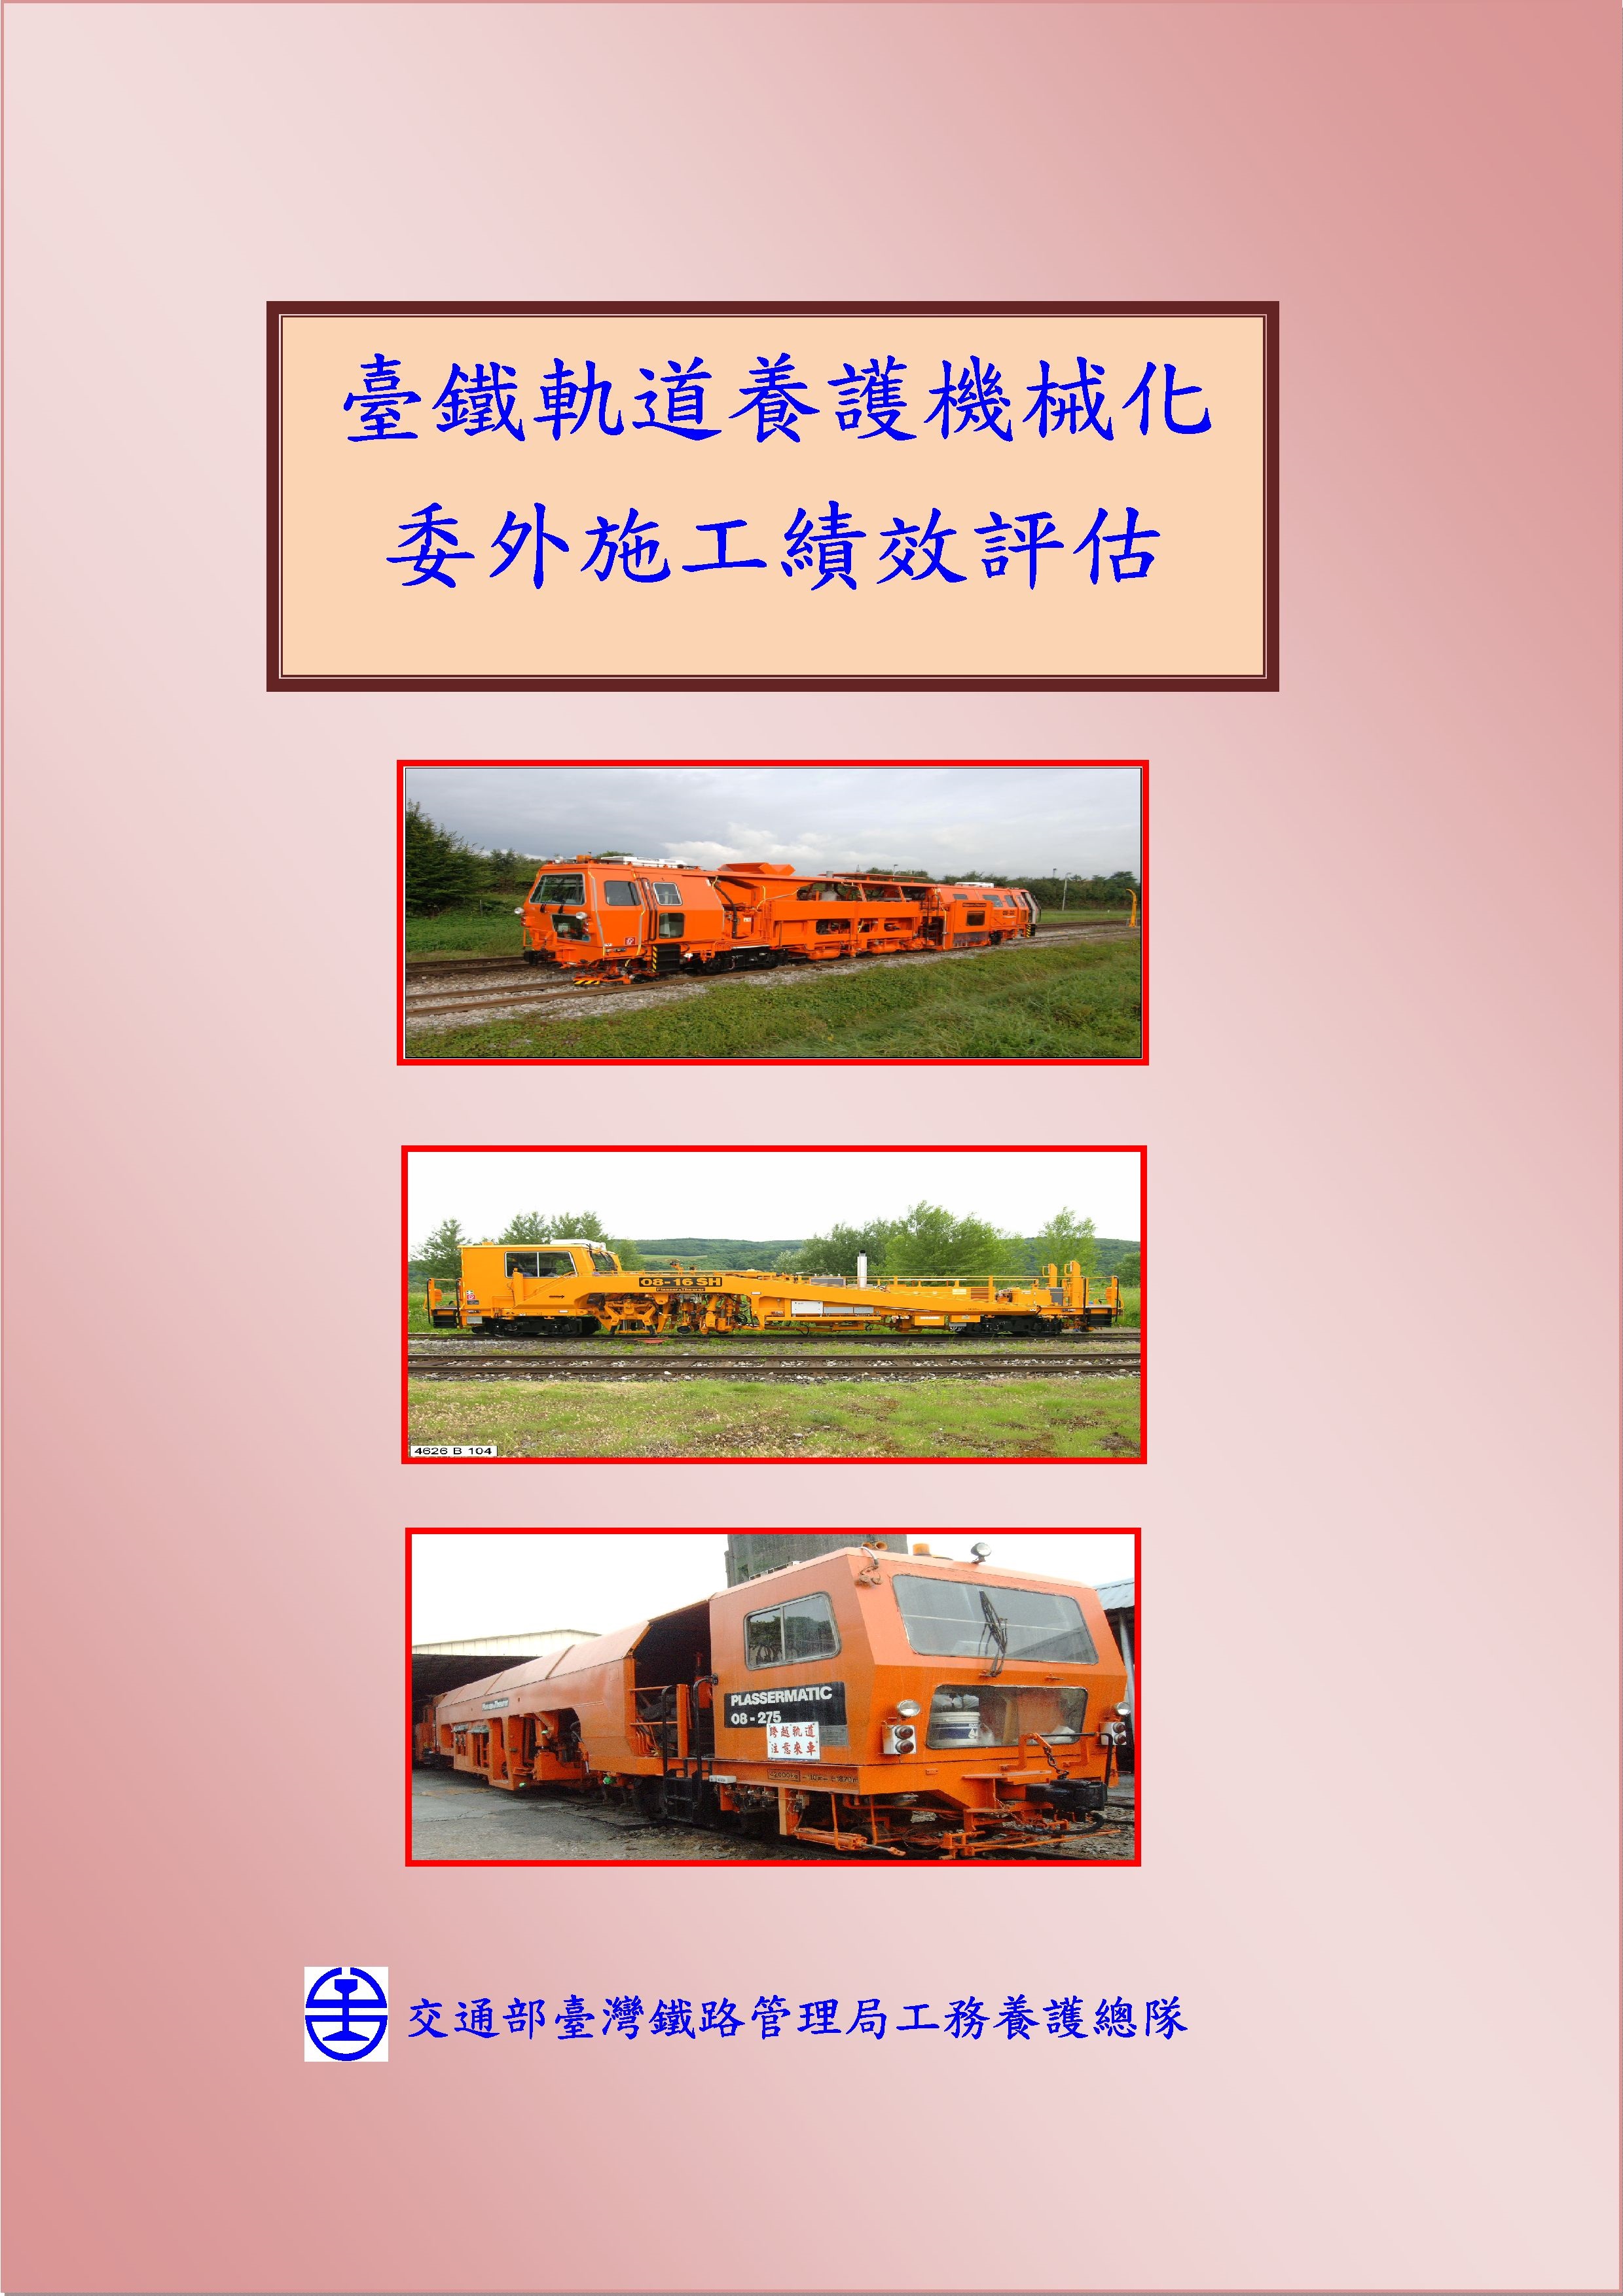 臺鐵軌道養護機械化委外施工績效評估